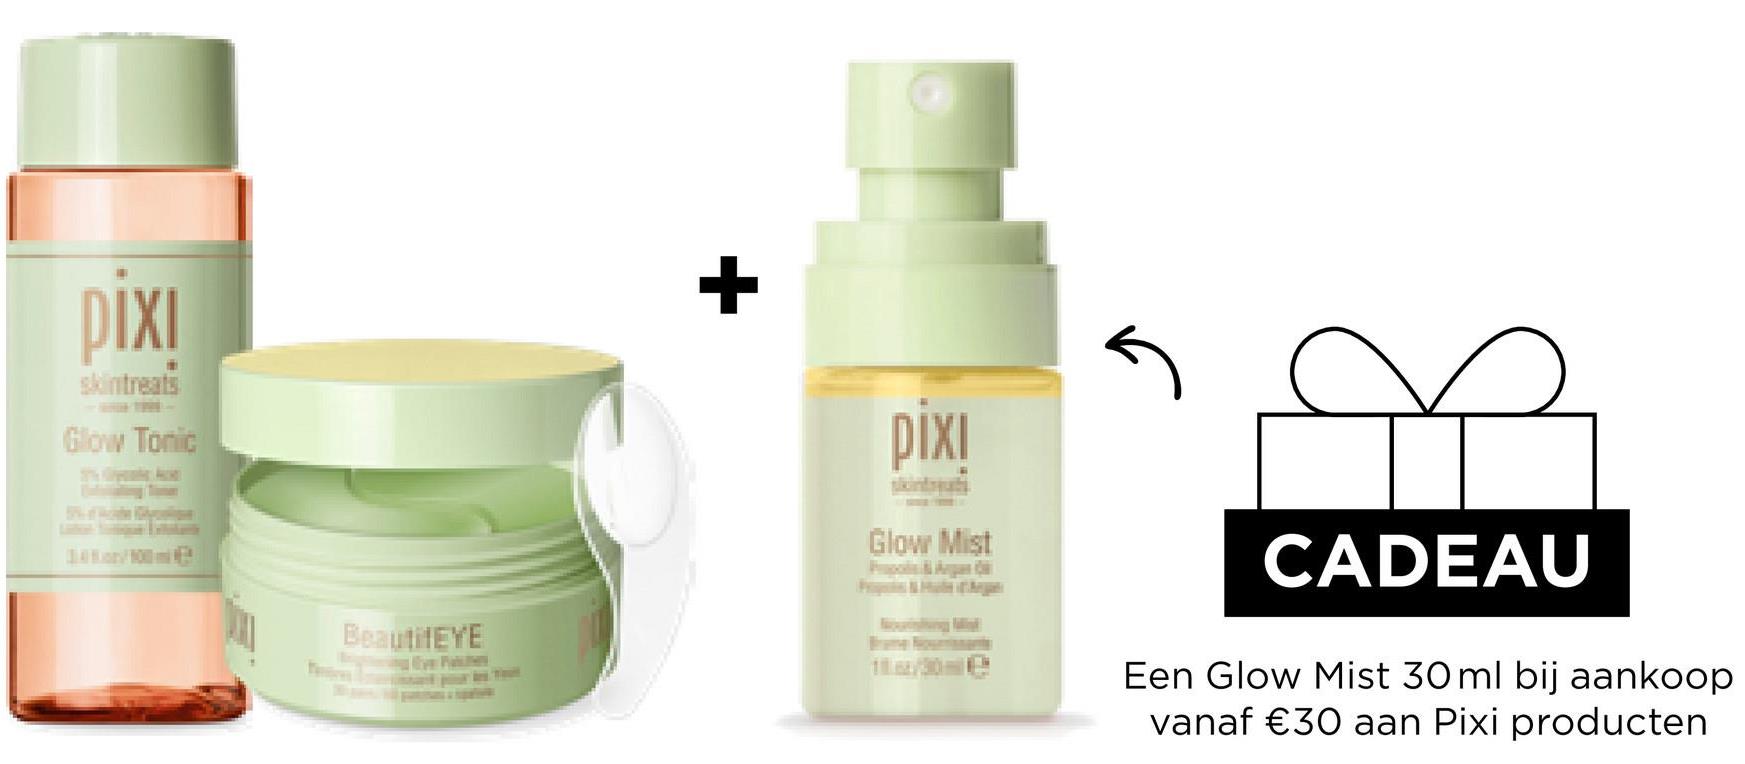 pixi
Glow Tonic
BeautifEYE
+
pixi
Glow Mist
CADEAU
Een Glow Mist 30 ml bij aankoop
vanaf €30 aan Pixi producten